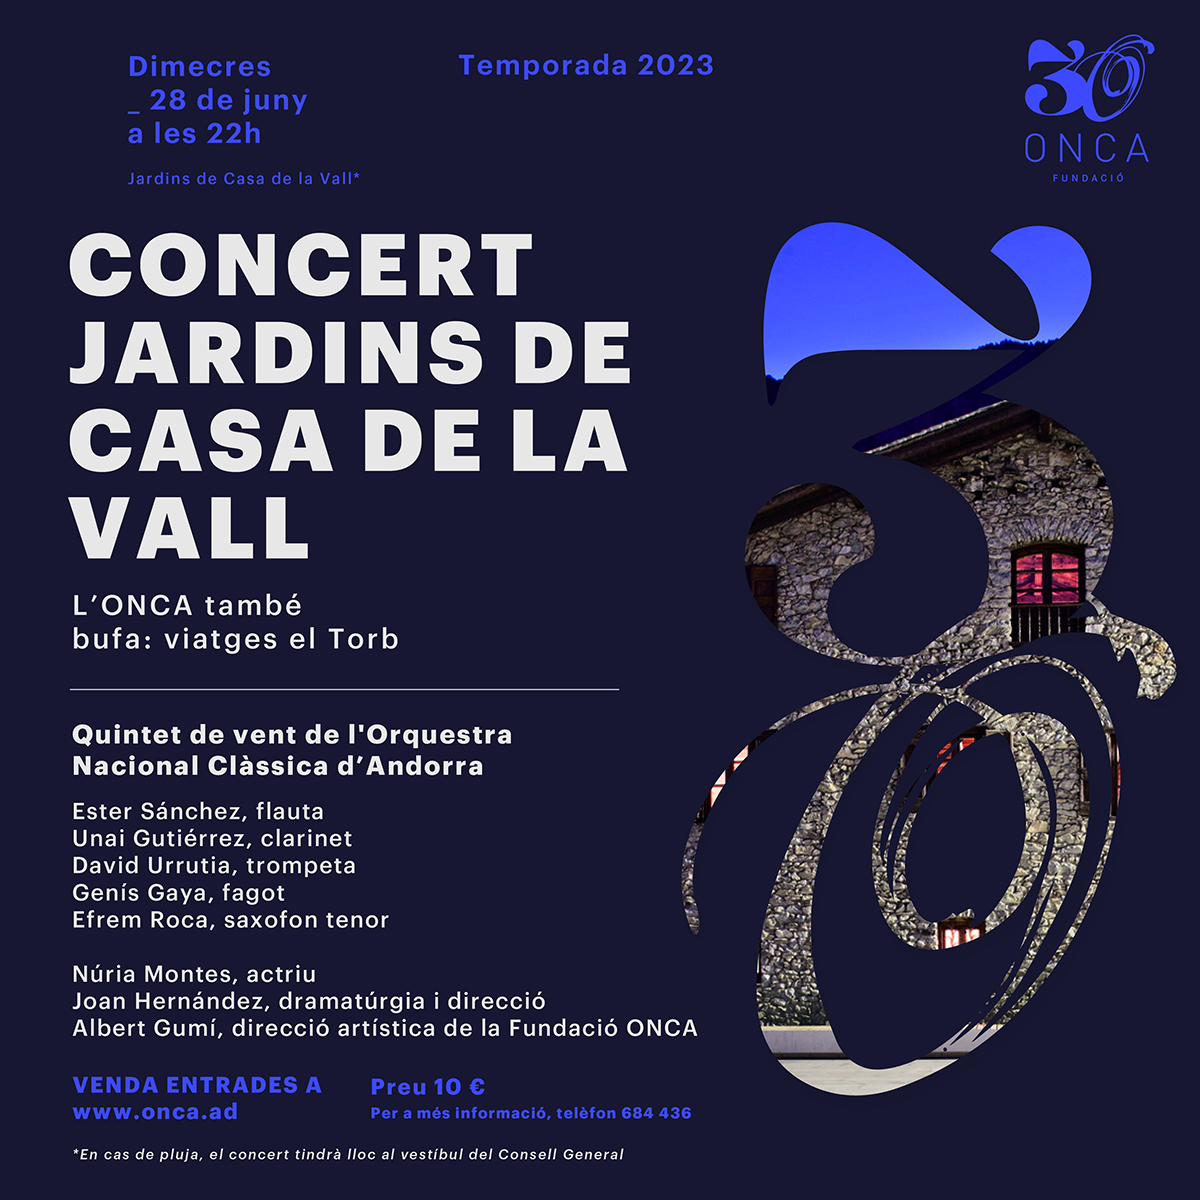 Un viatge amb avió i molta música, la nova proposta estiuenca pel tradicional concert dels Jardins de Casa de la Vall